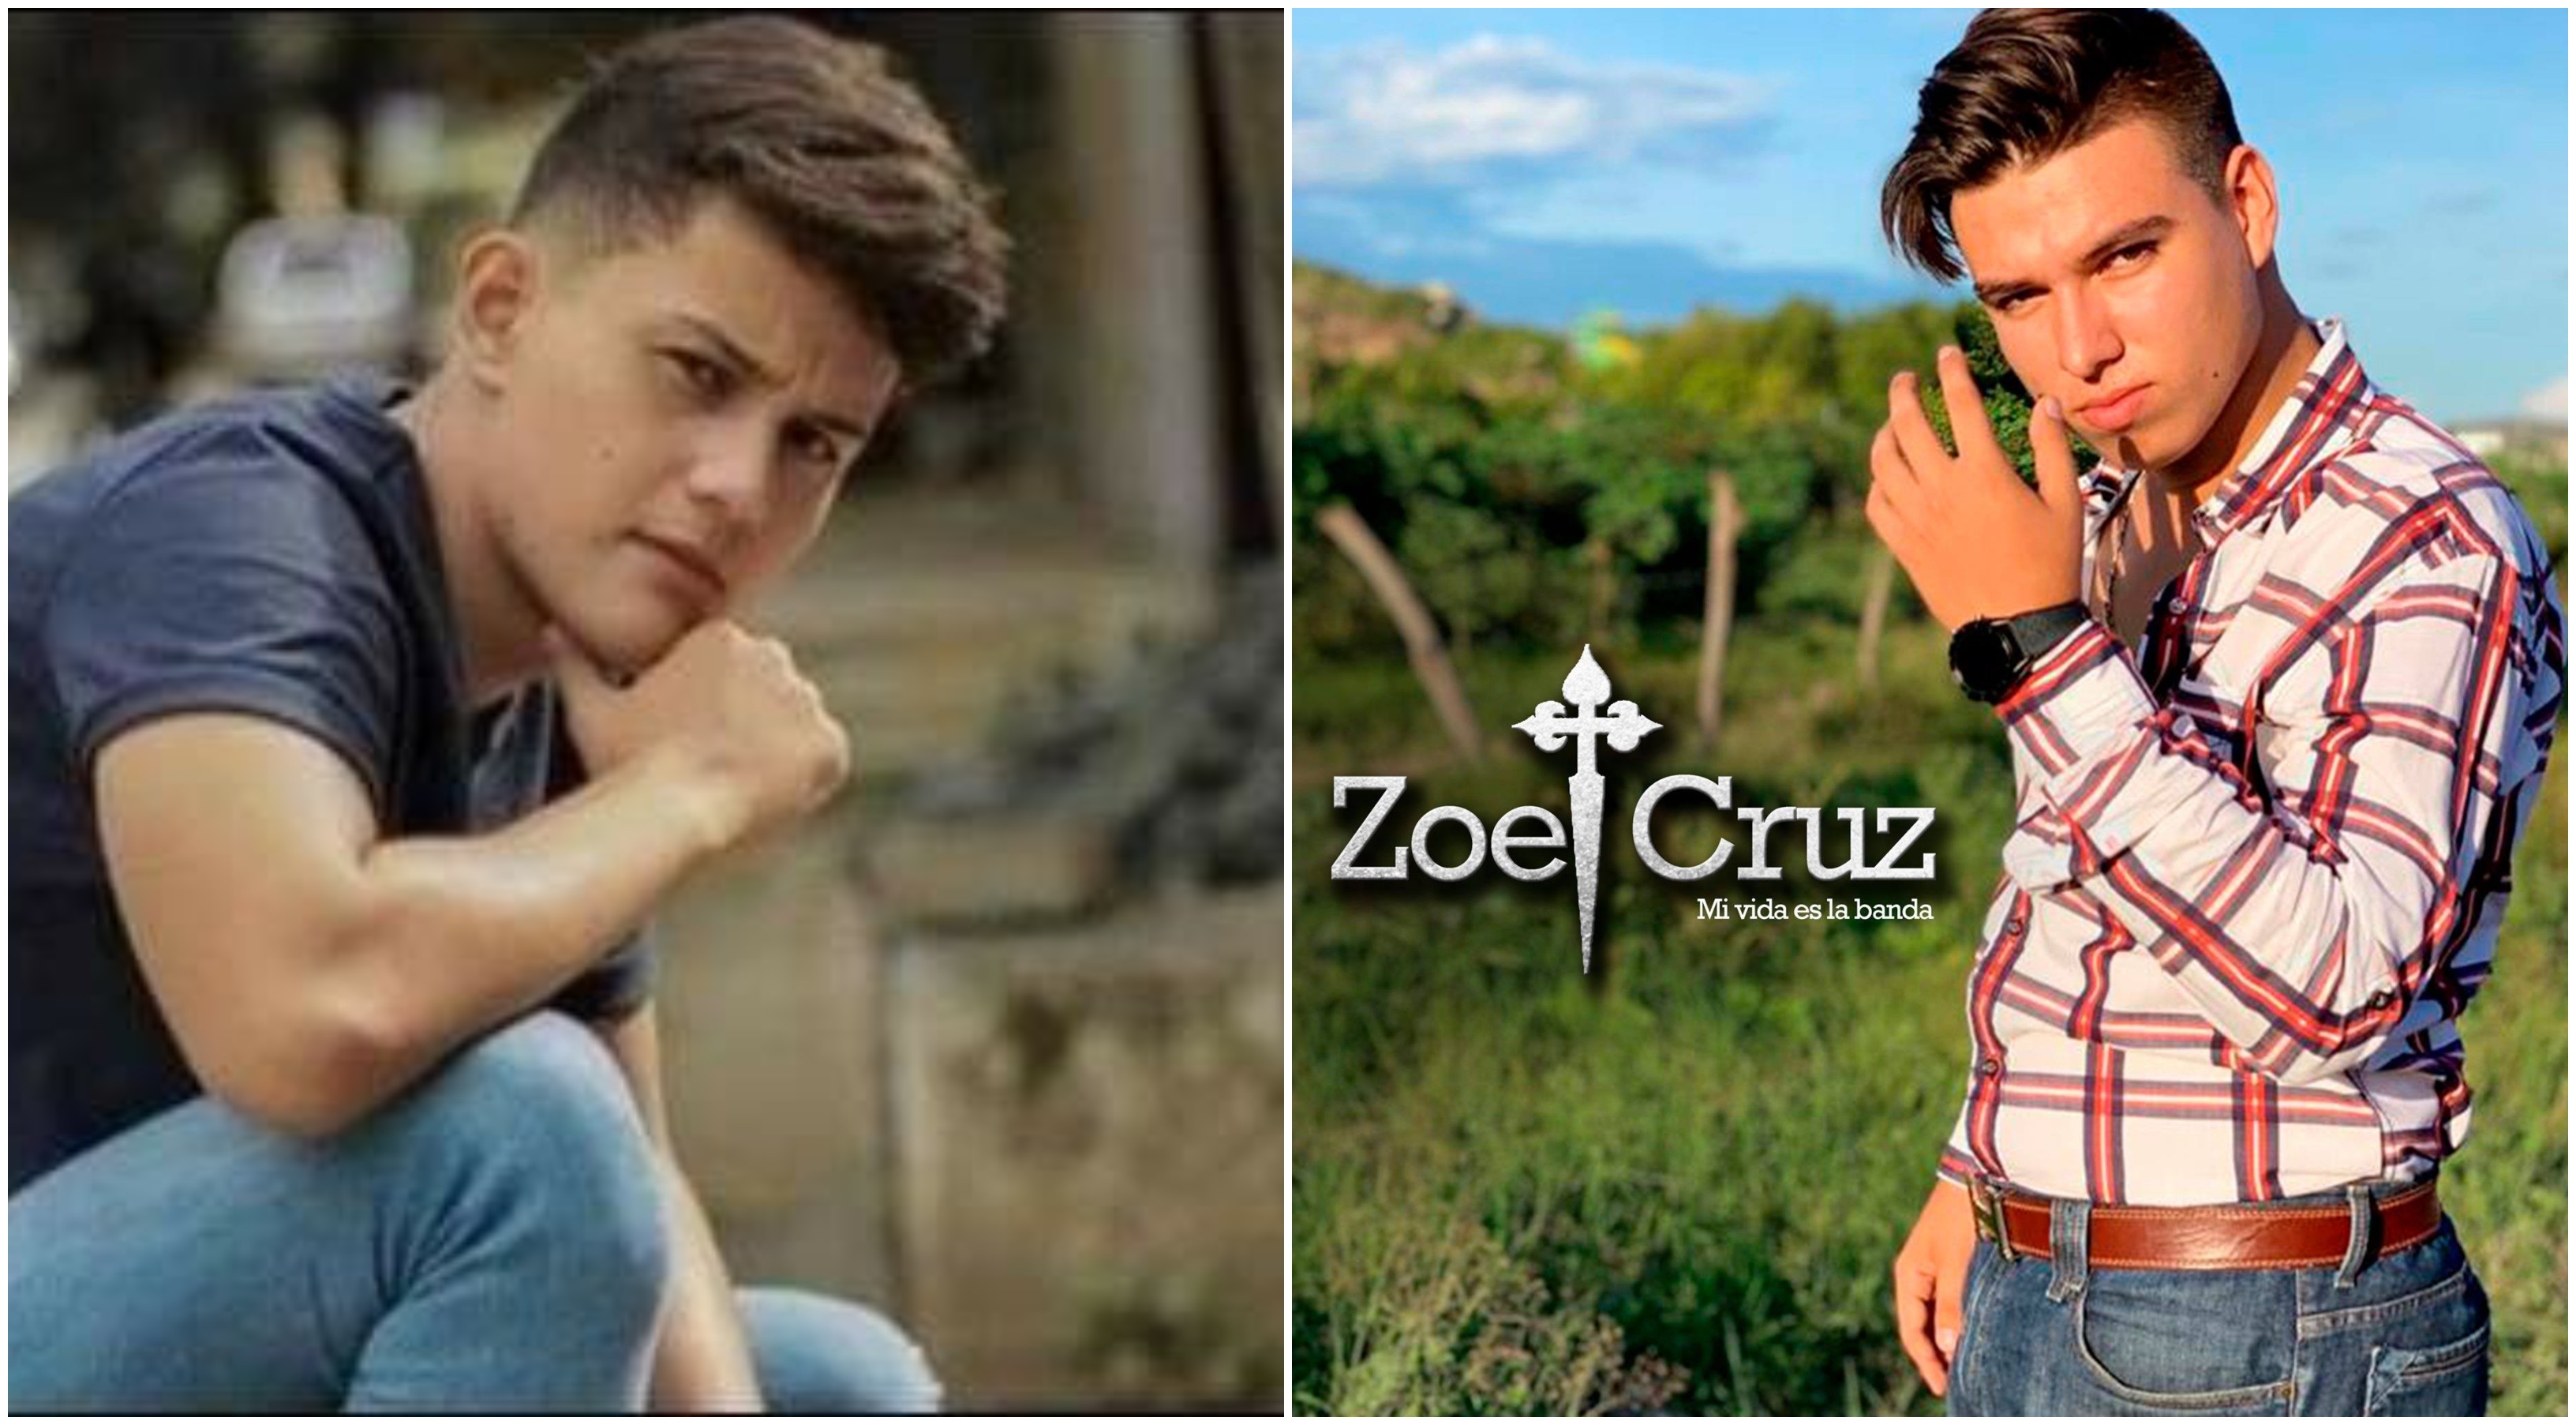 Josué Daniel Vargas Morales y José Zoel Cruz desaparecieron en circunstancias parecidas en Zacapa. Las familias de ambos los siguen buscando. (Foto Prensa Libre: Hemeroteca PL).